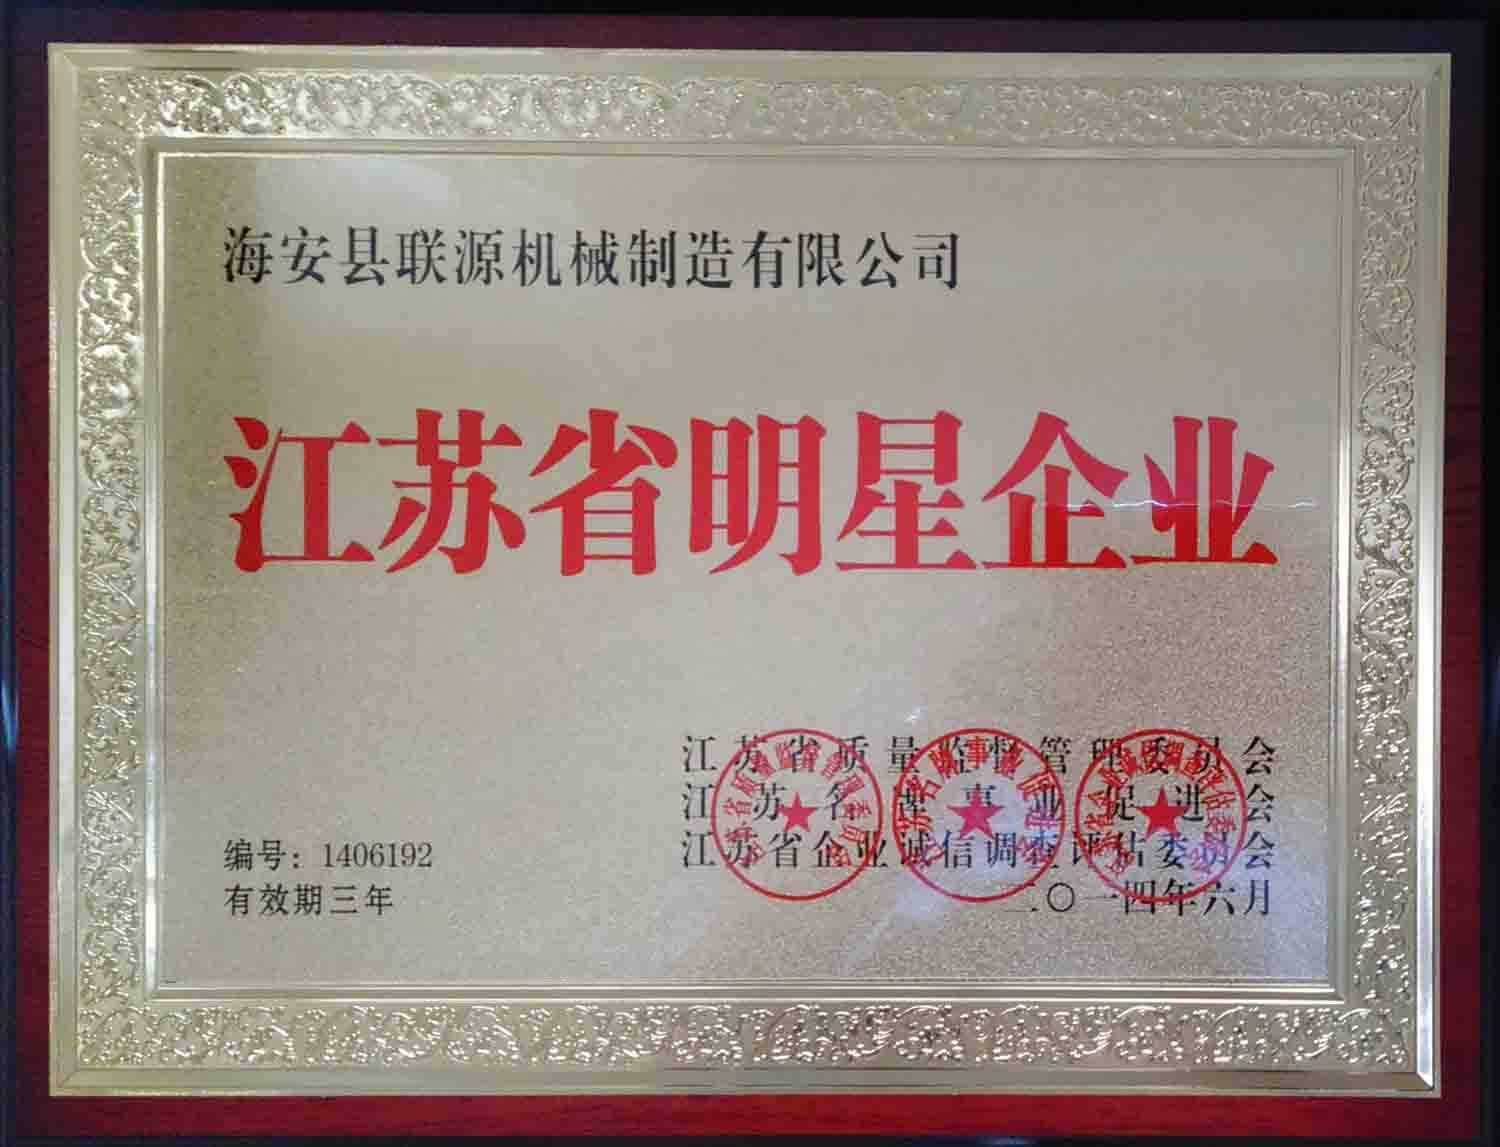 联源公司荣获2014年度“江苏省明星企业”称号